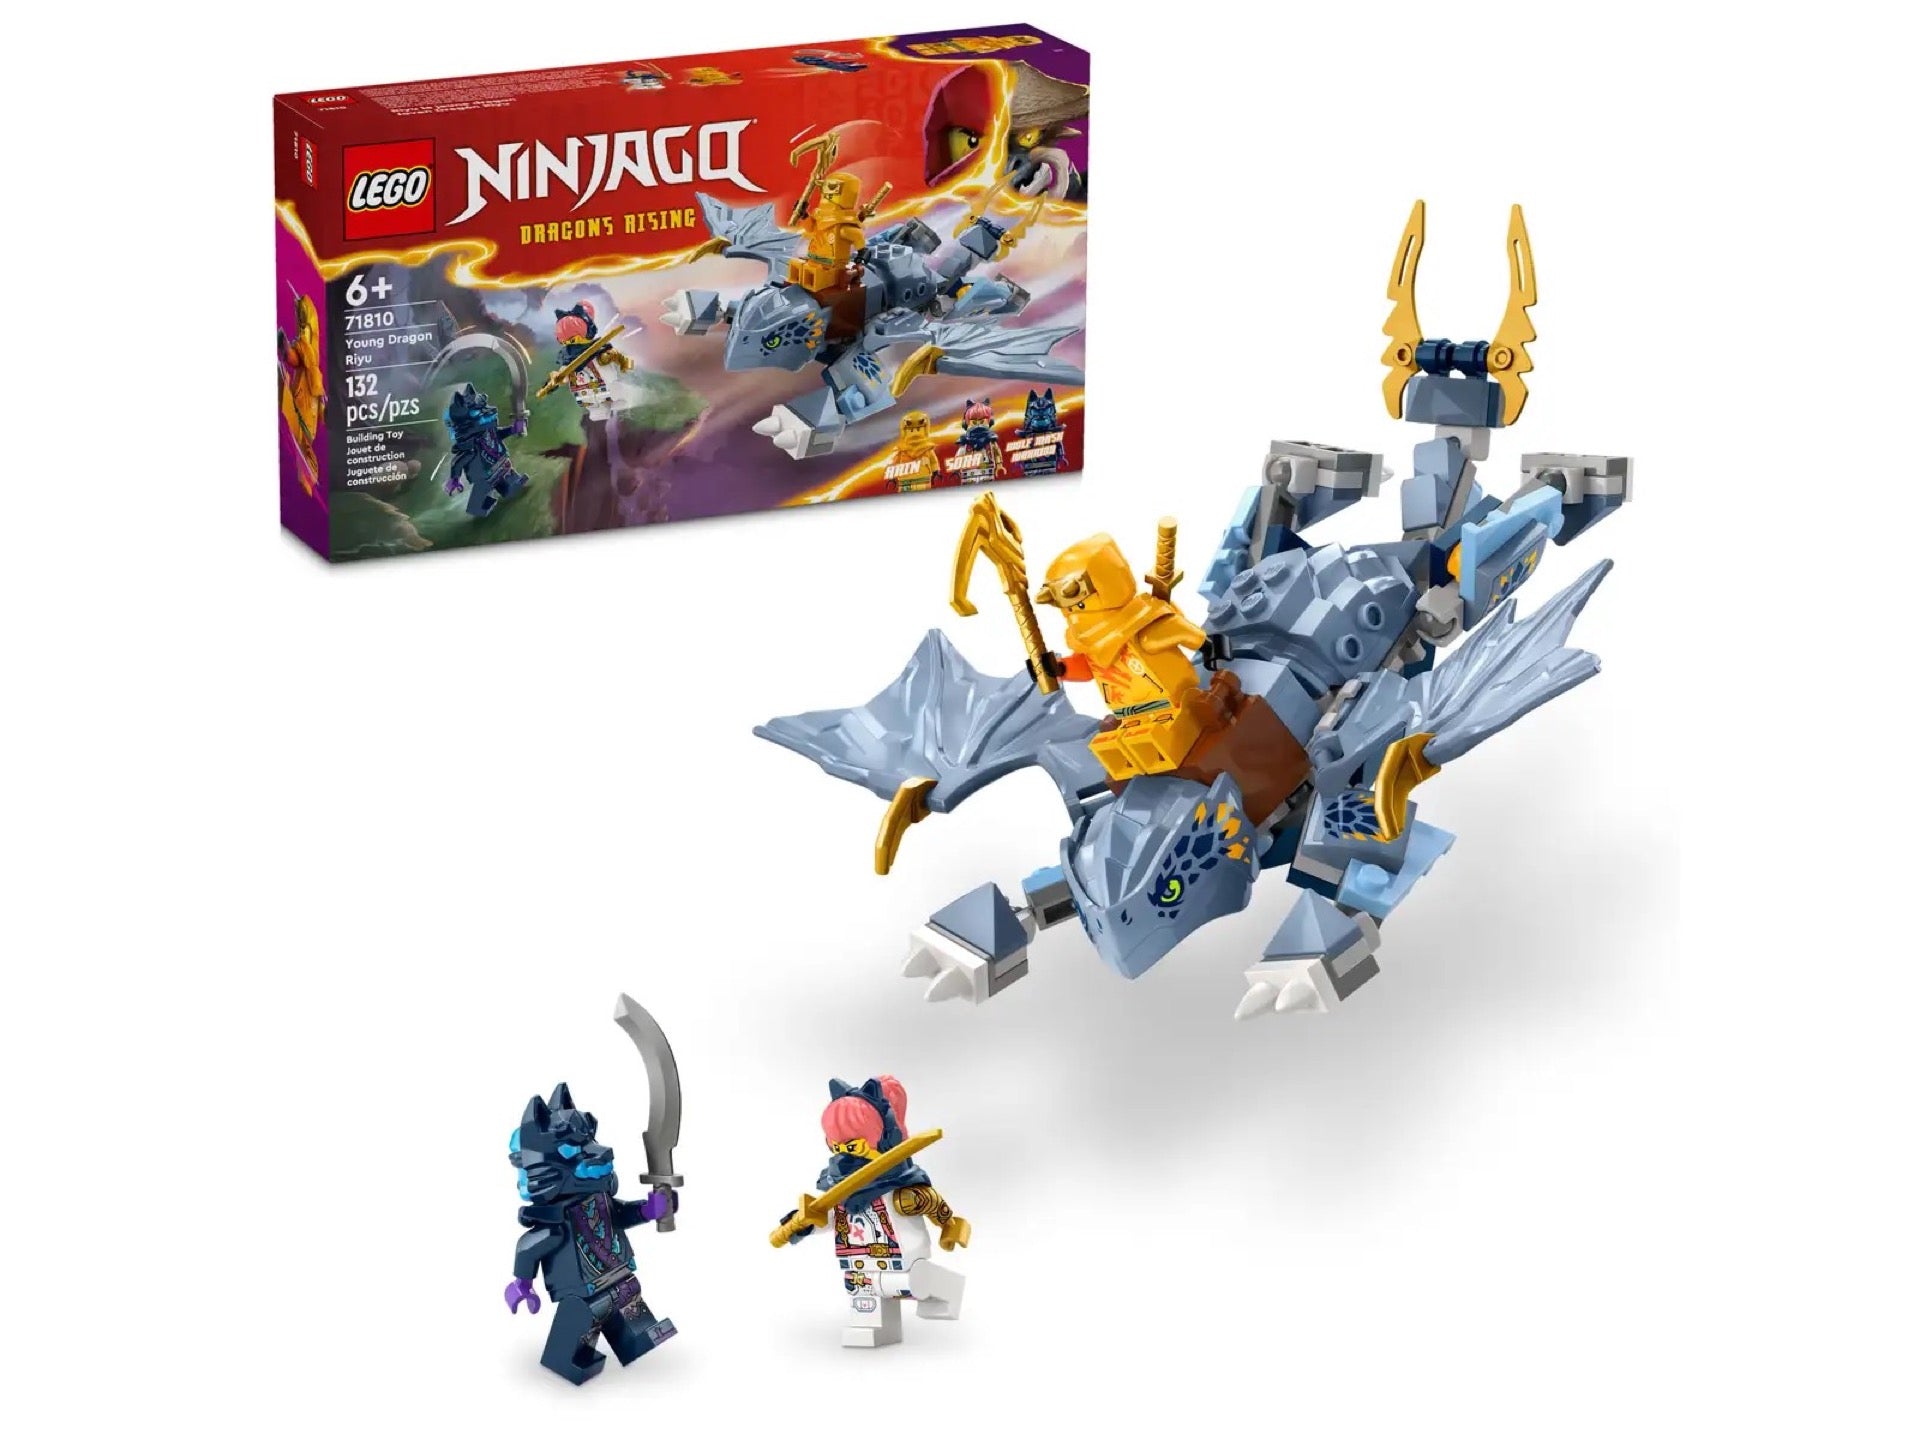 71810 LEGO Ninjago Draghetto Riyu